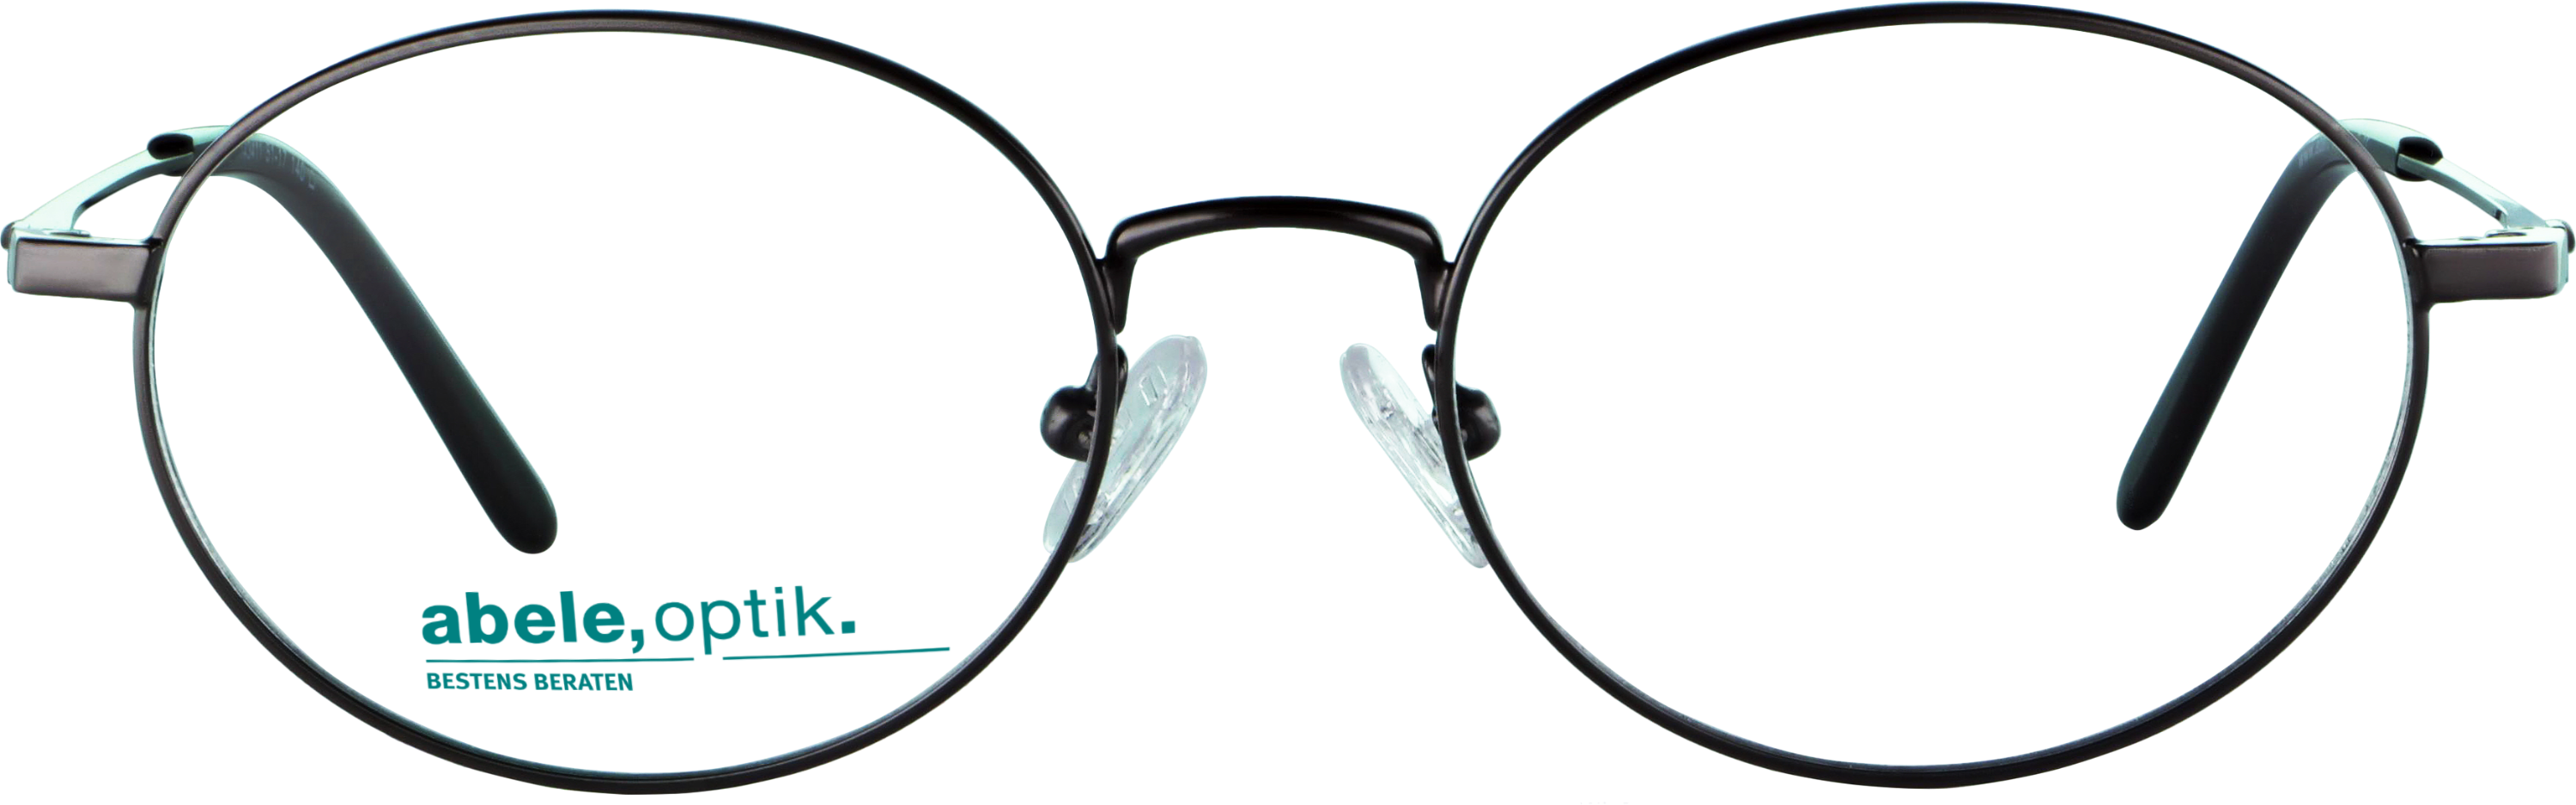 Das Bild zeigt die Korrektionsbrille 143411 von der Marke Abele Optik in dunkelgrau.